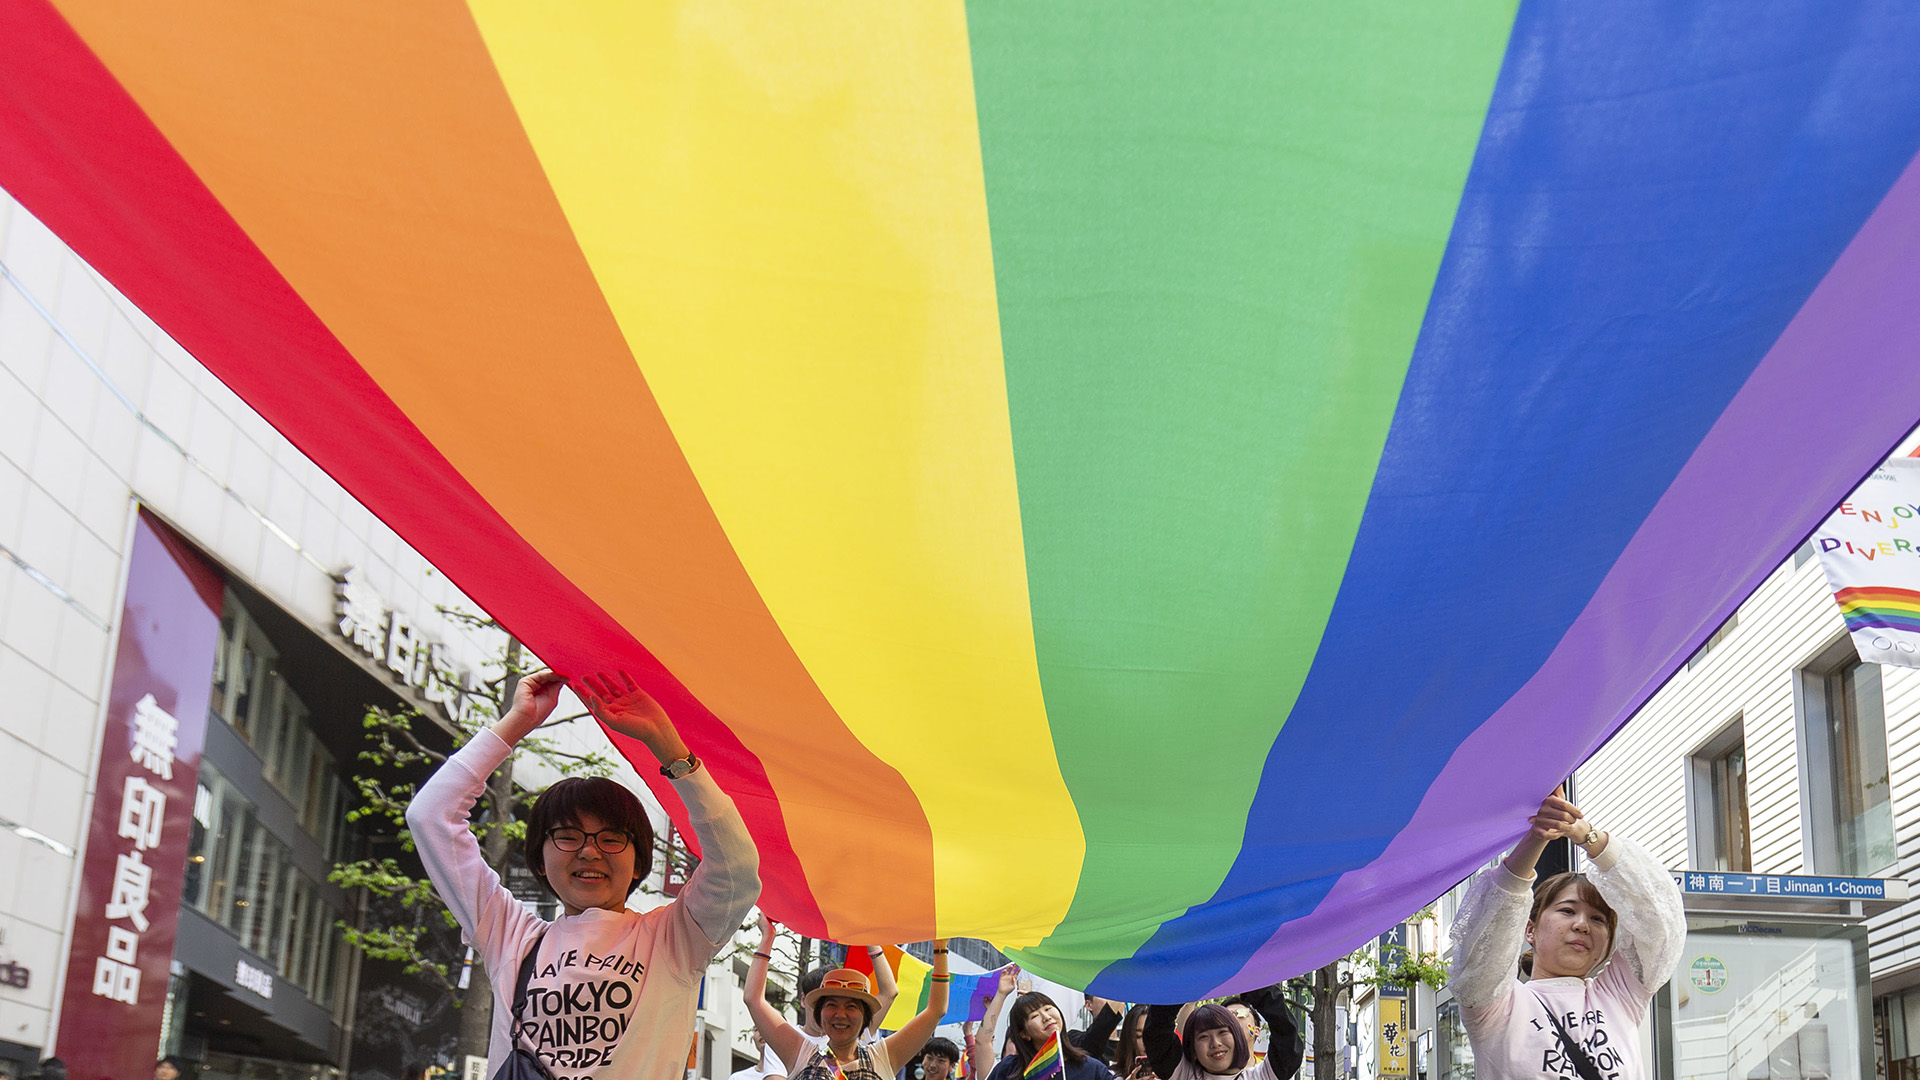 Eine große Regenbogenflagge wird von Demonstrierenden gehalten | picture alliance / ZUMAPRESS.com